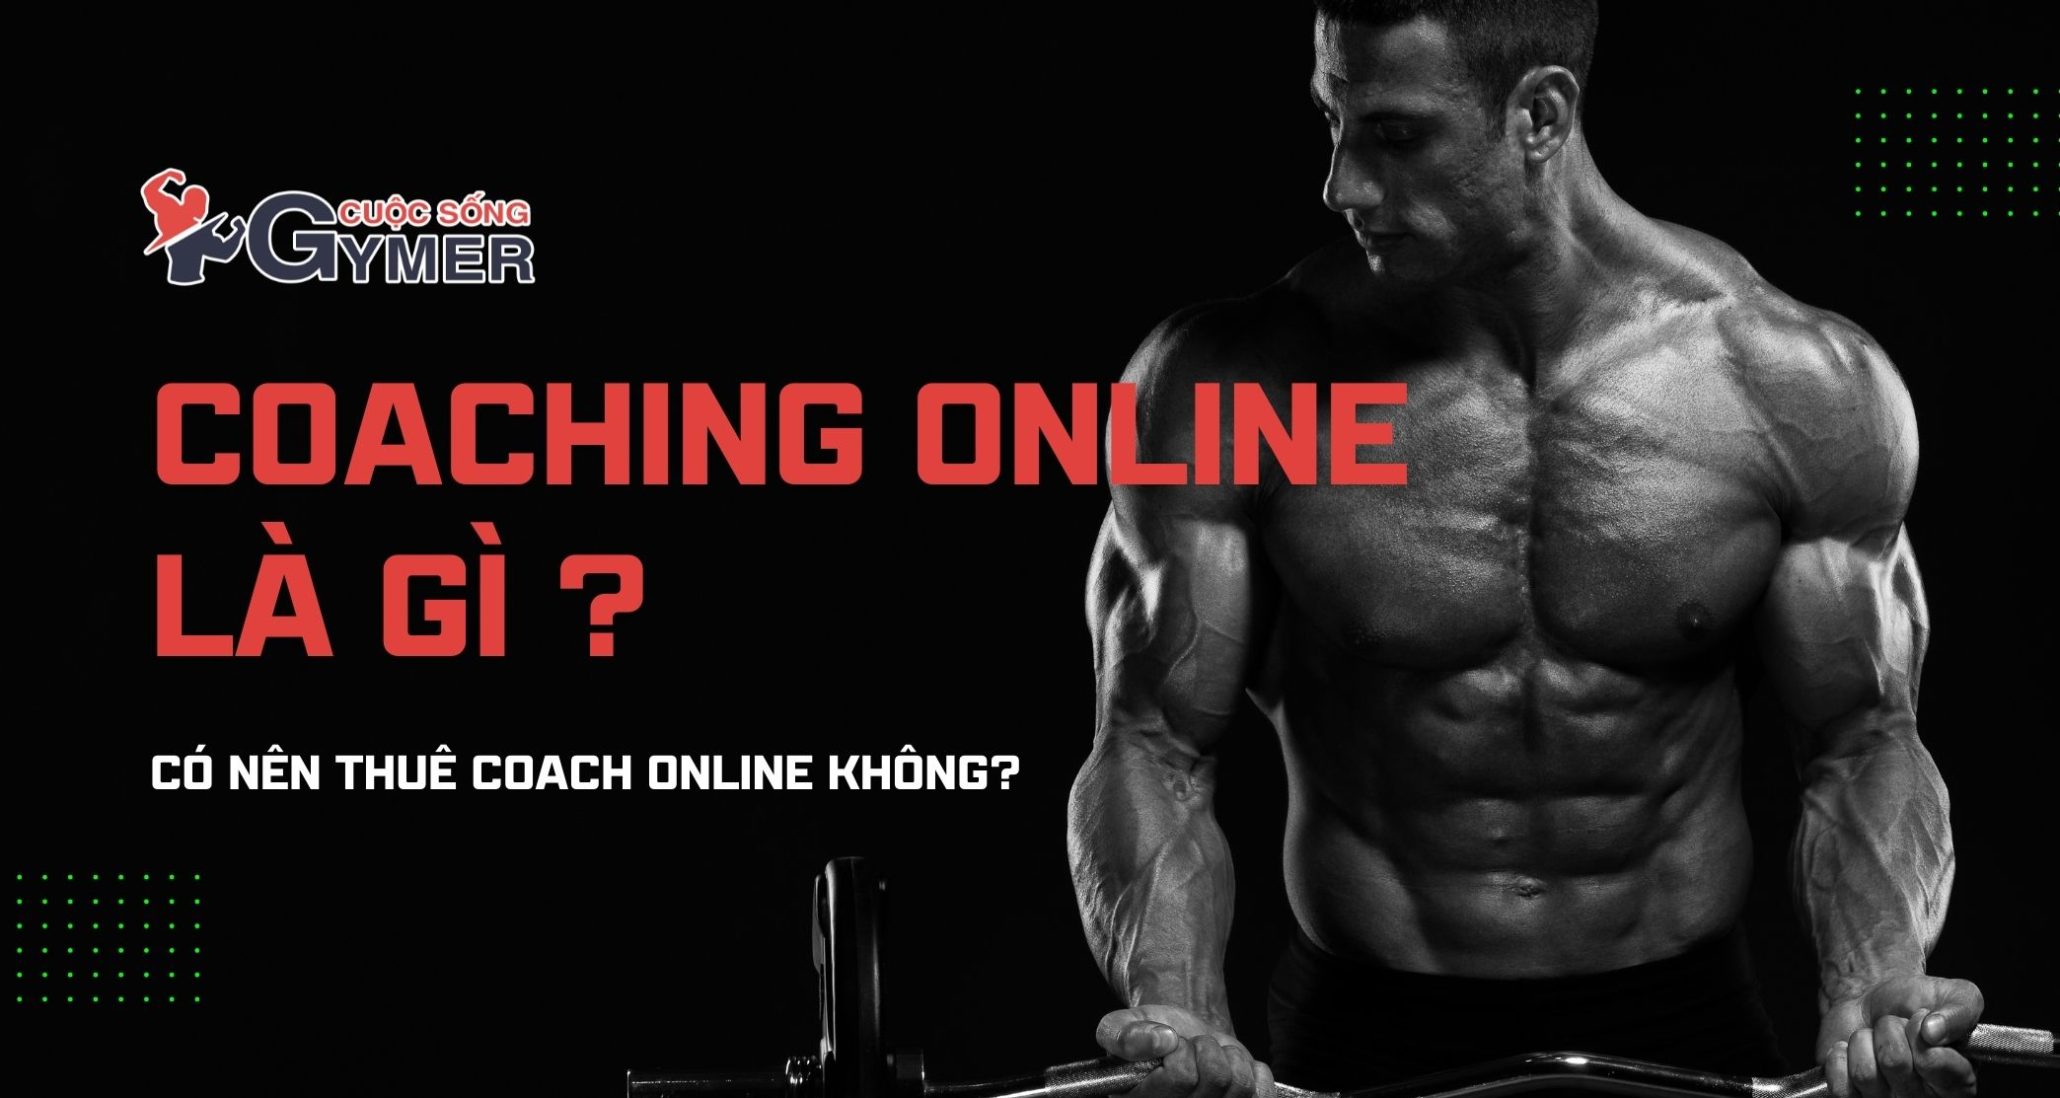 Coach Online là gì? Có nên thuê Coach Online không?